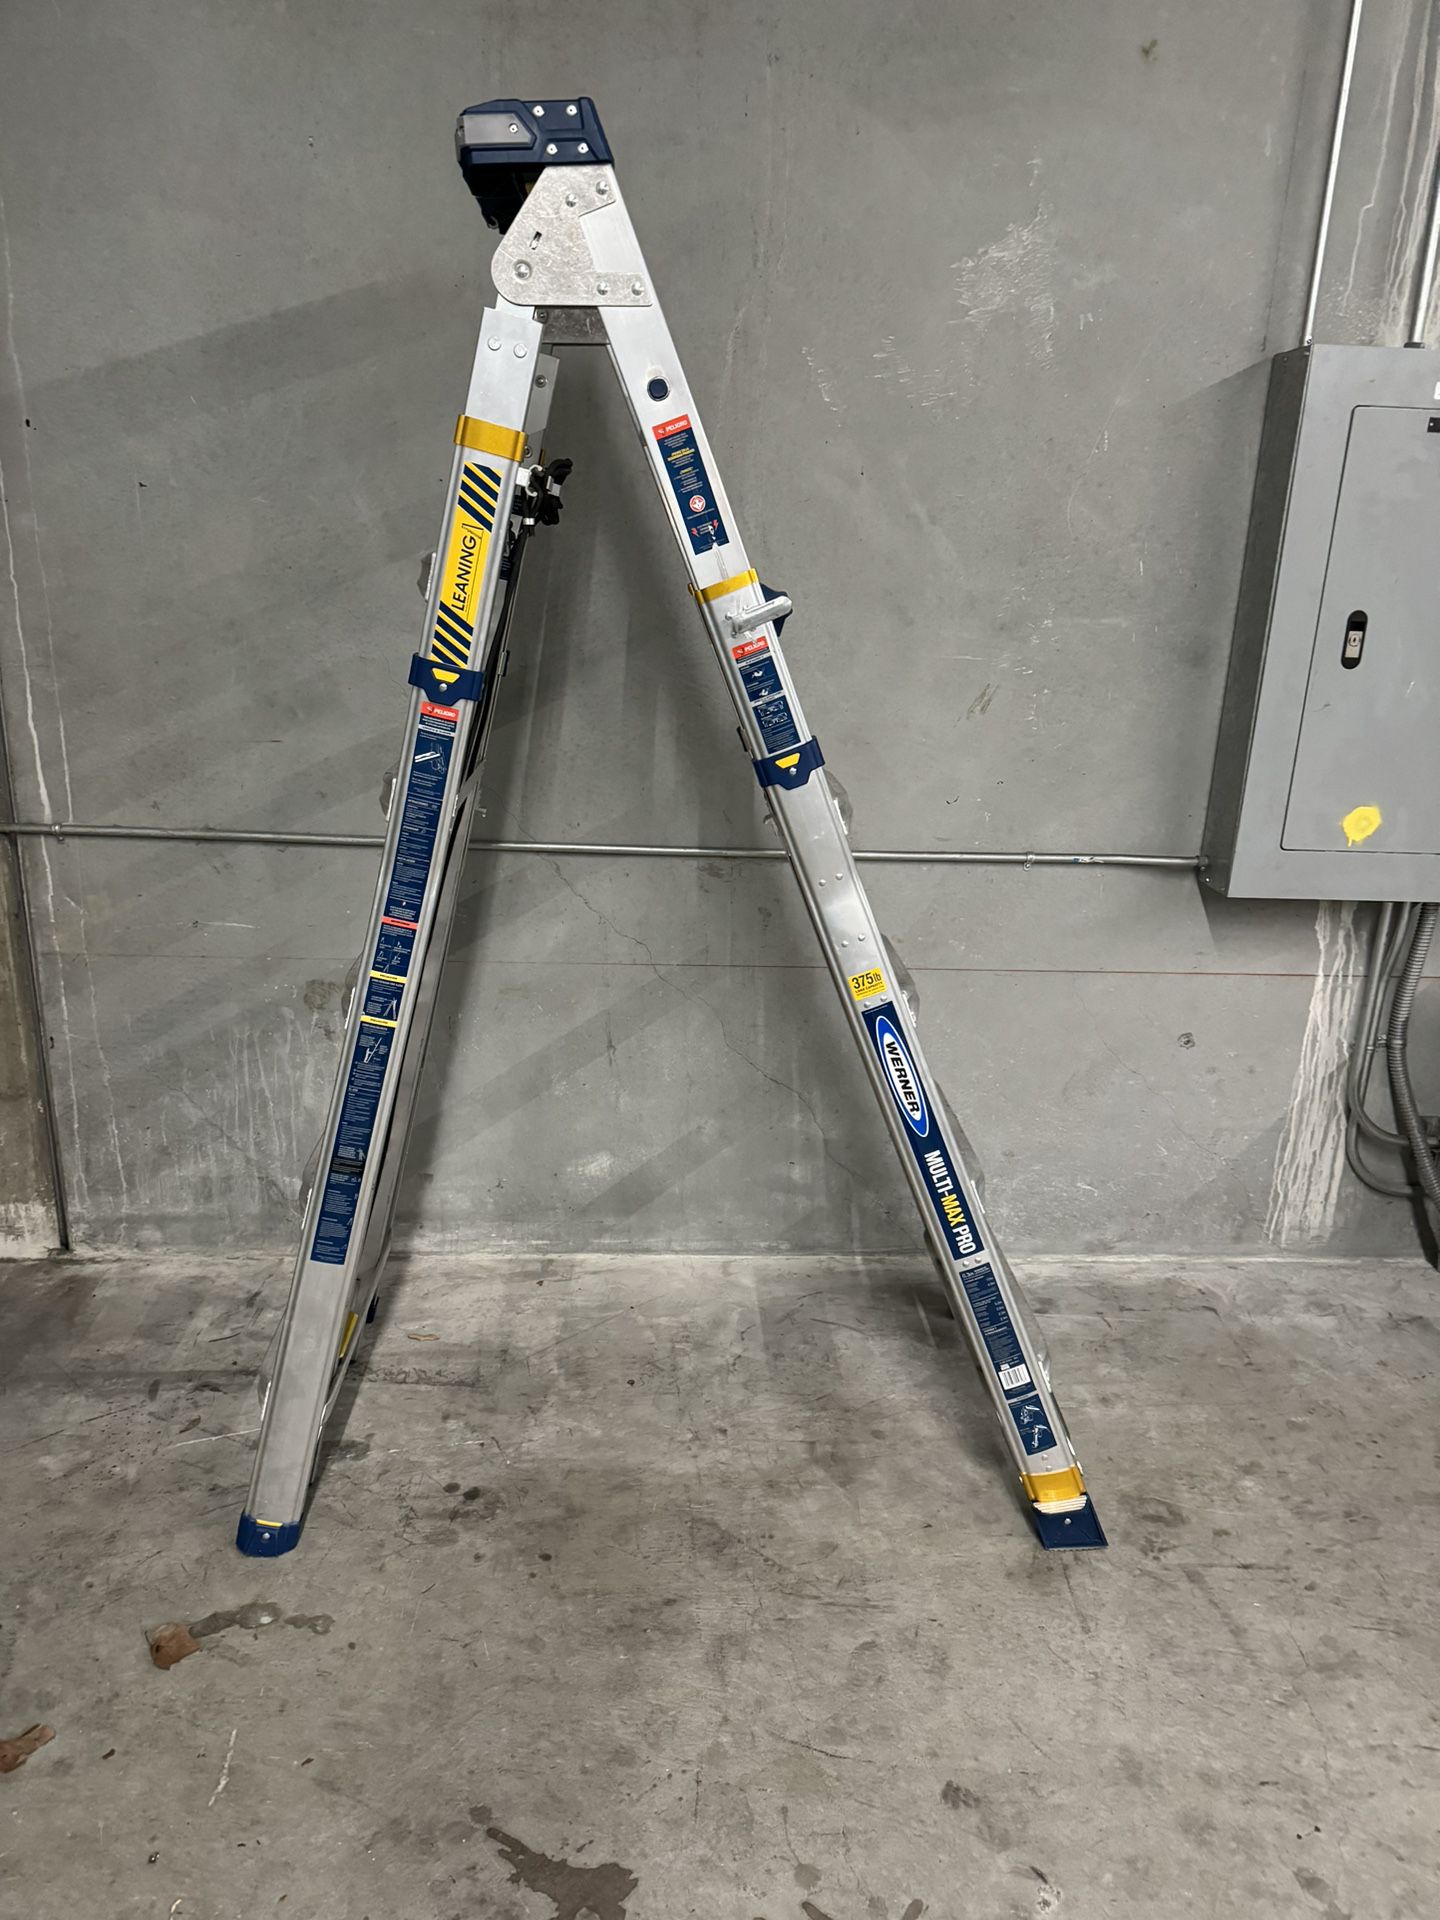 Werner Multi Max Pro Adjustable Ladder